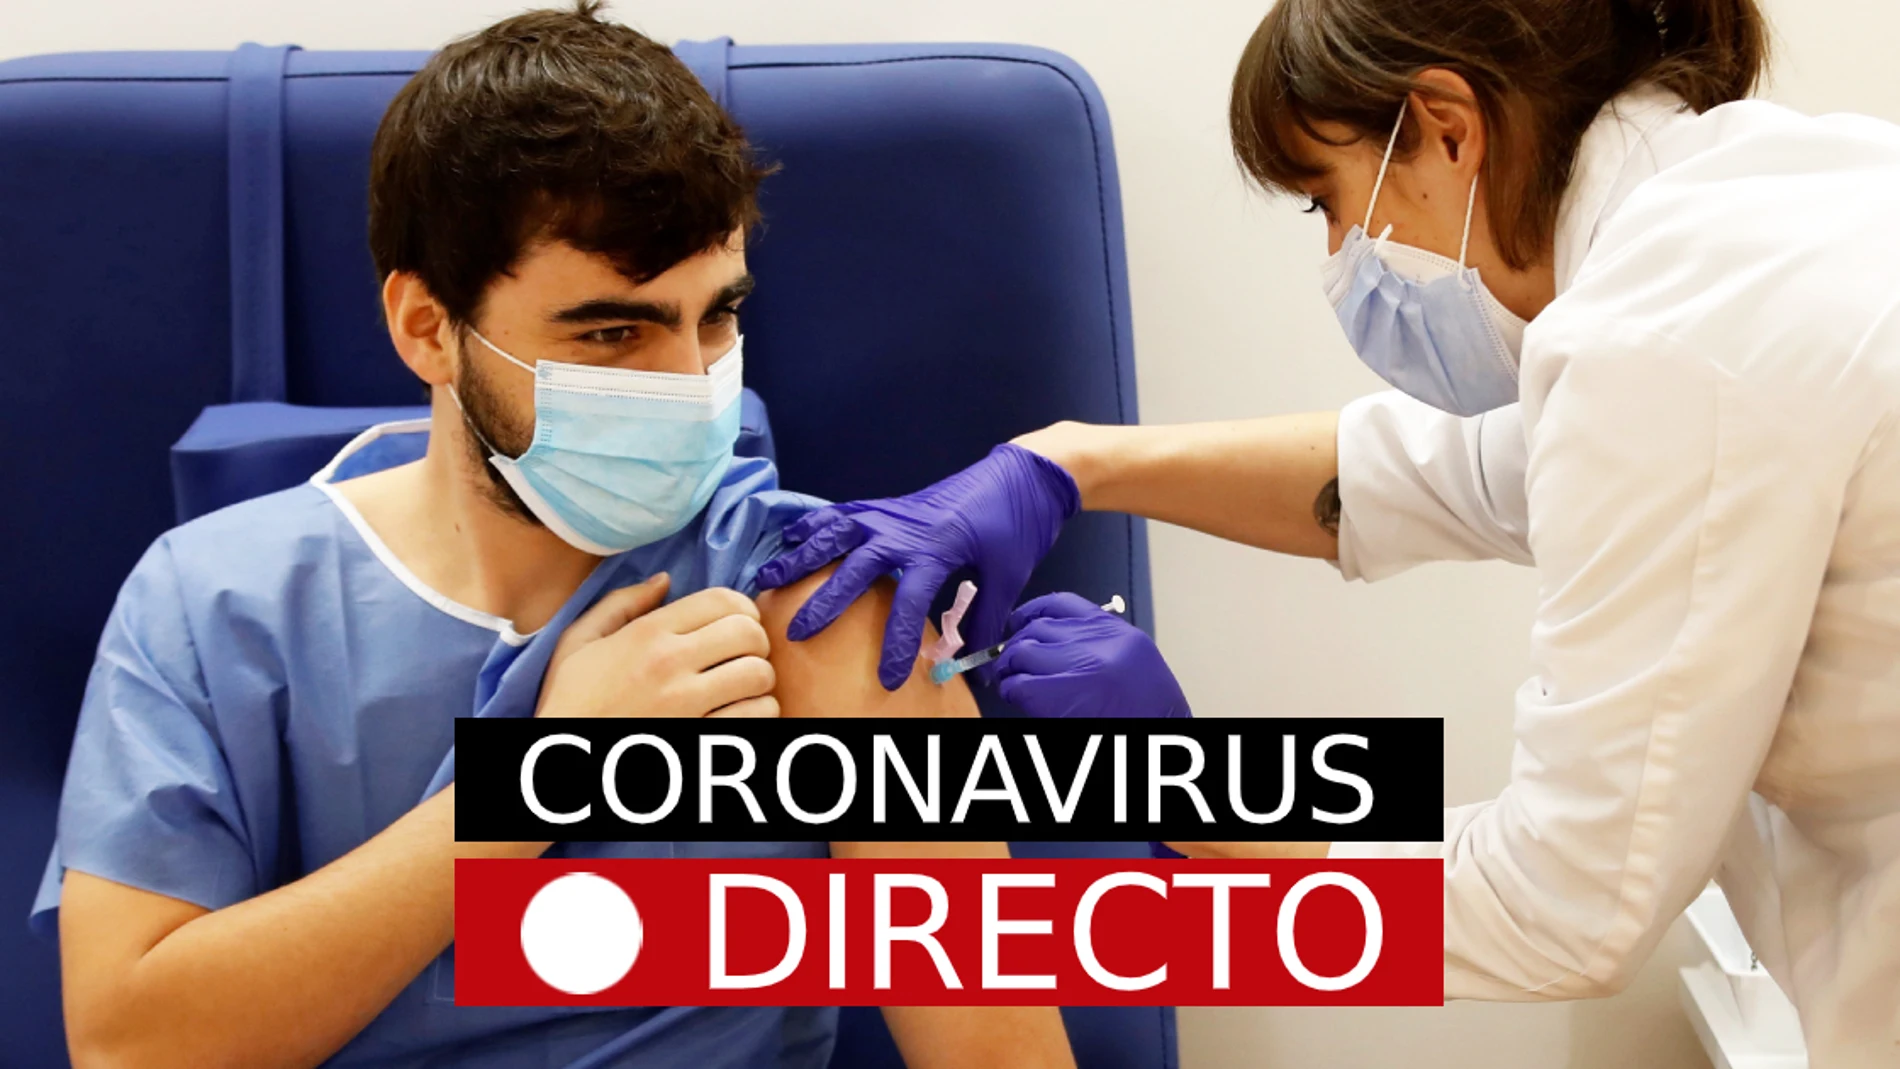 Coronavirus España | Última hora del COVID-19, medidas y cierres perimetrales, en directo